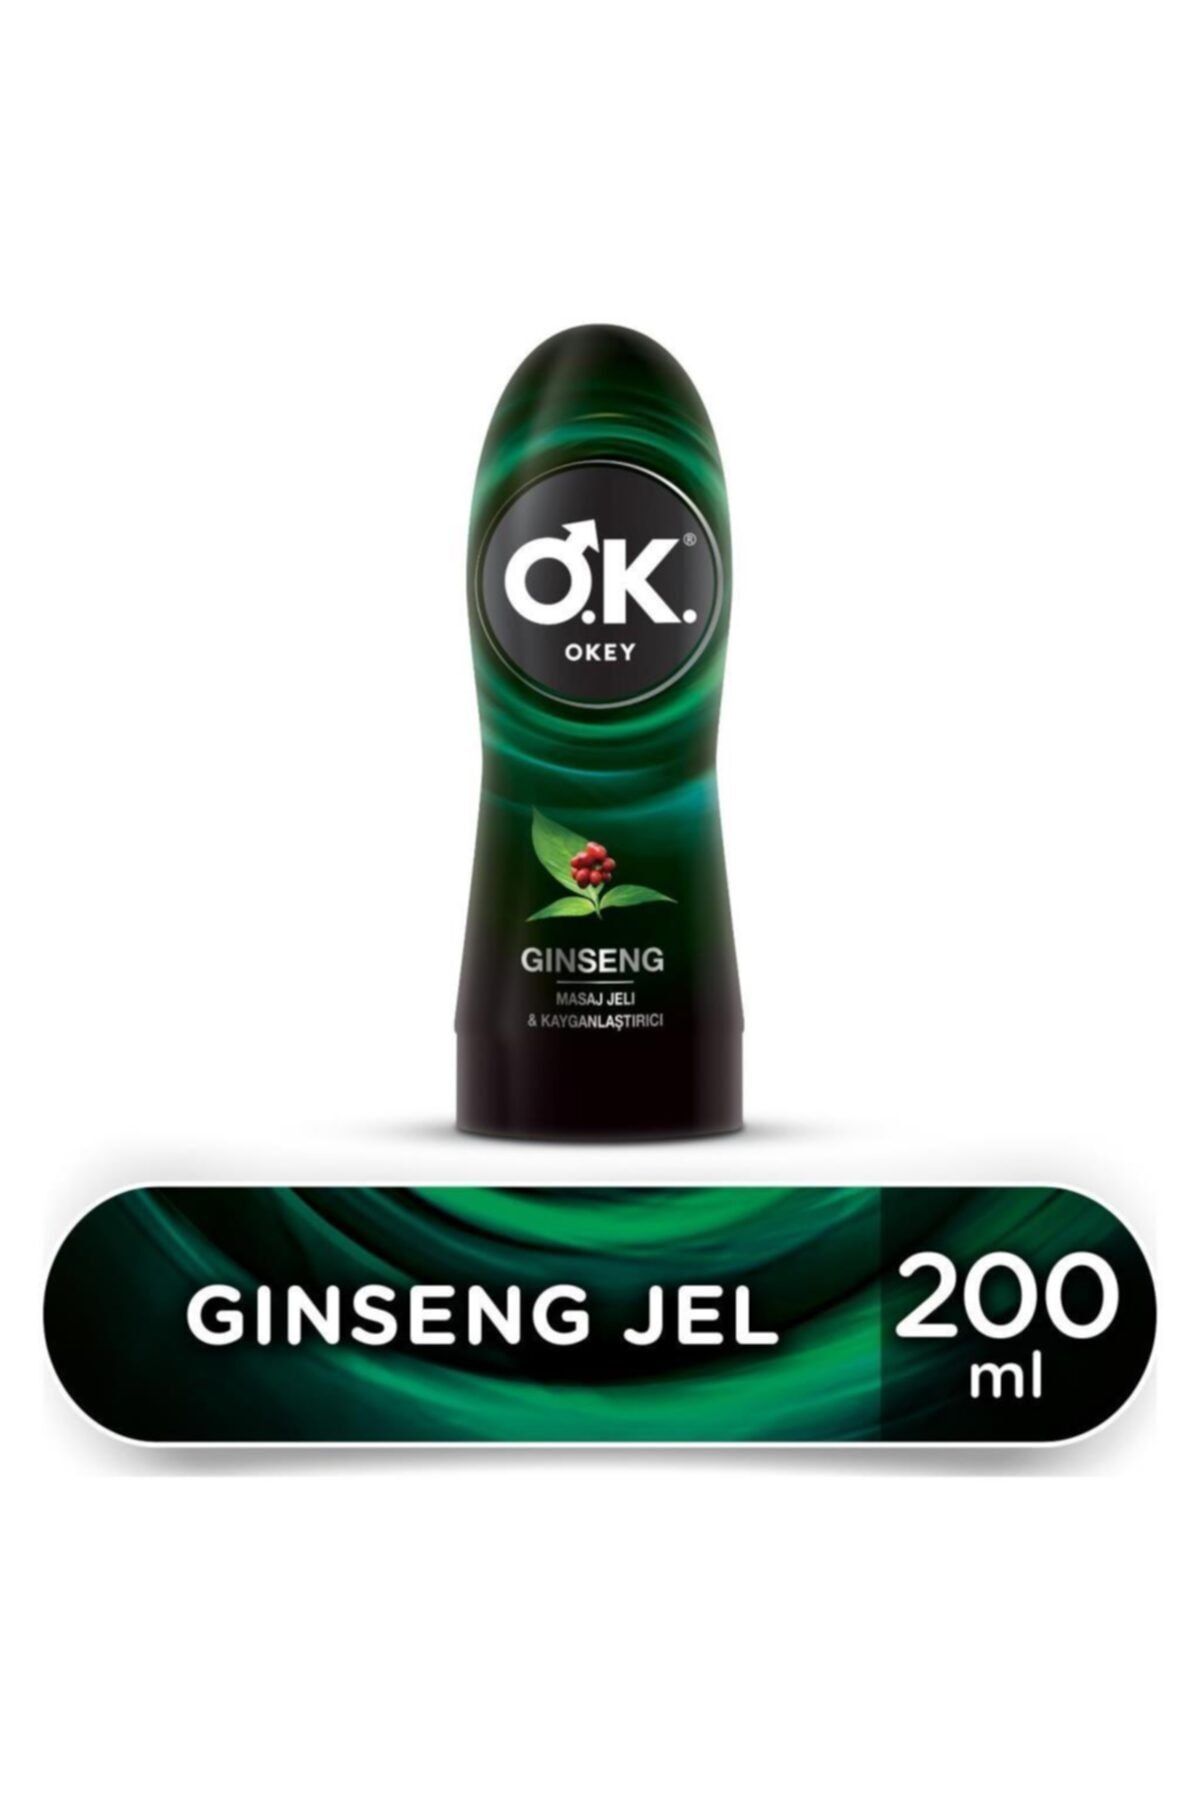 Okey  Masaj Jeli & Kayganlaştırıcı Ginseng Jel 200ml -LVRS-9